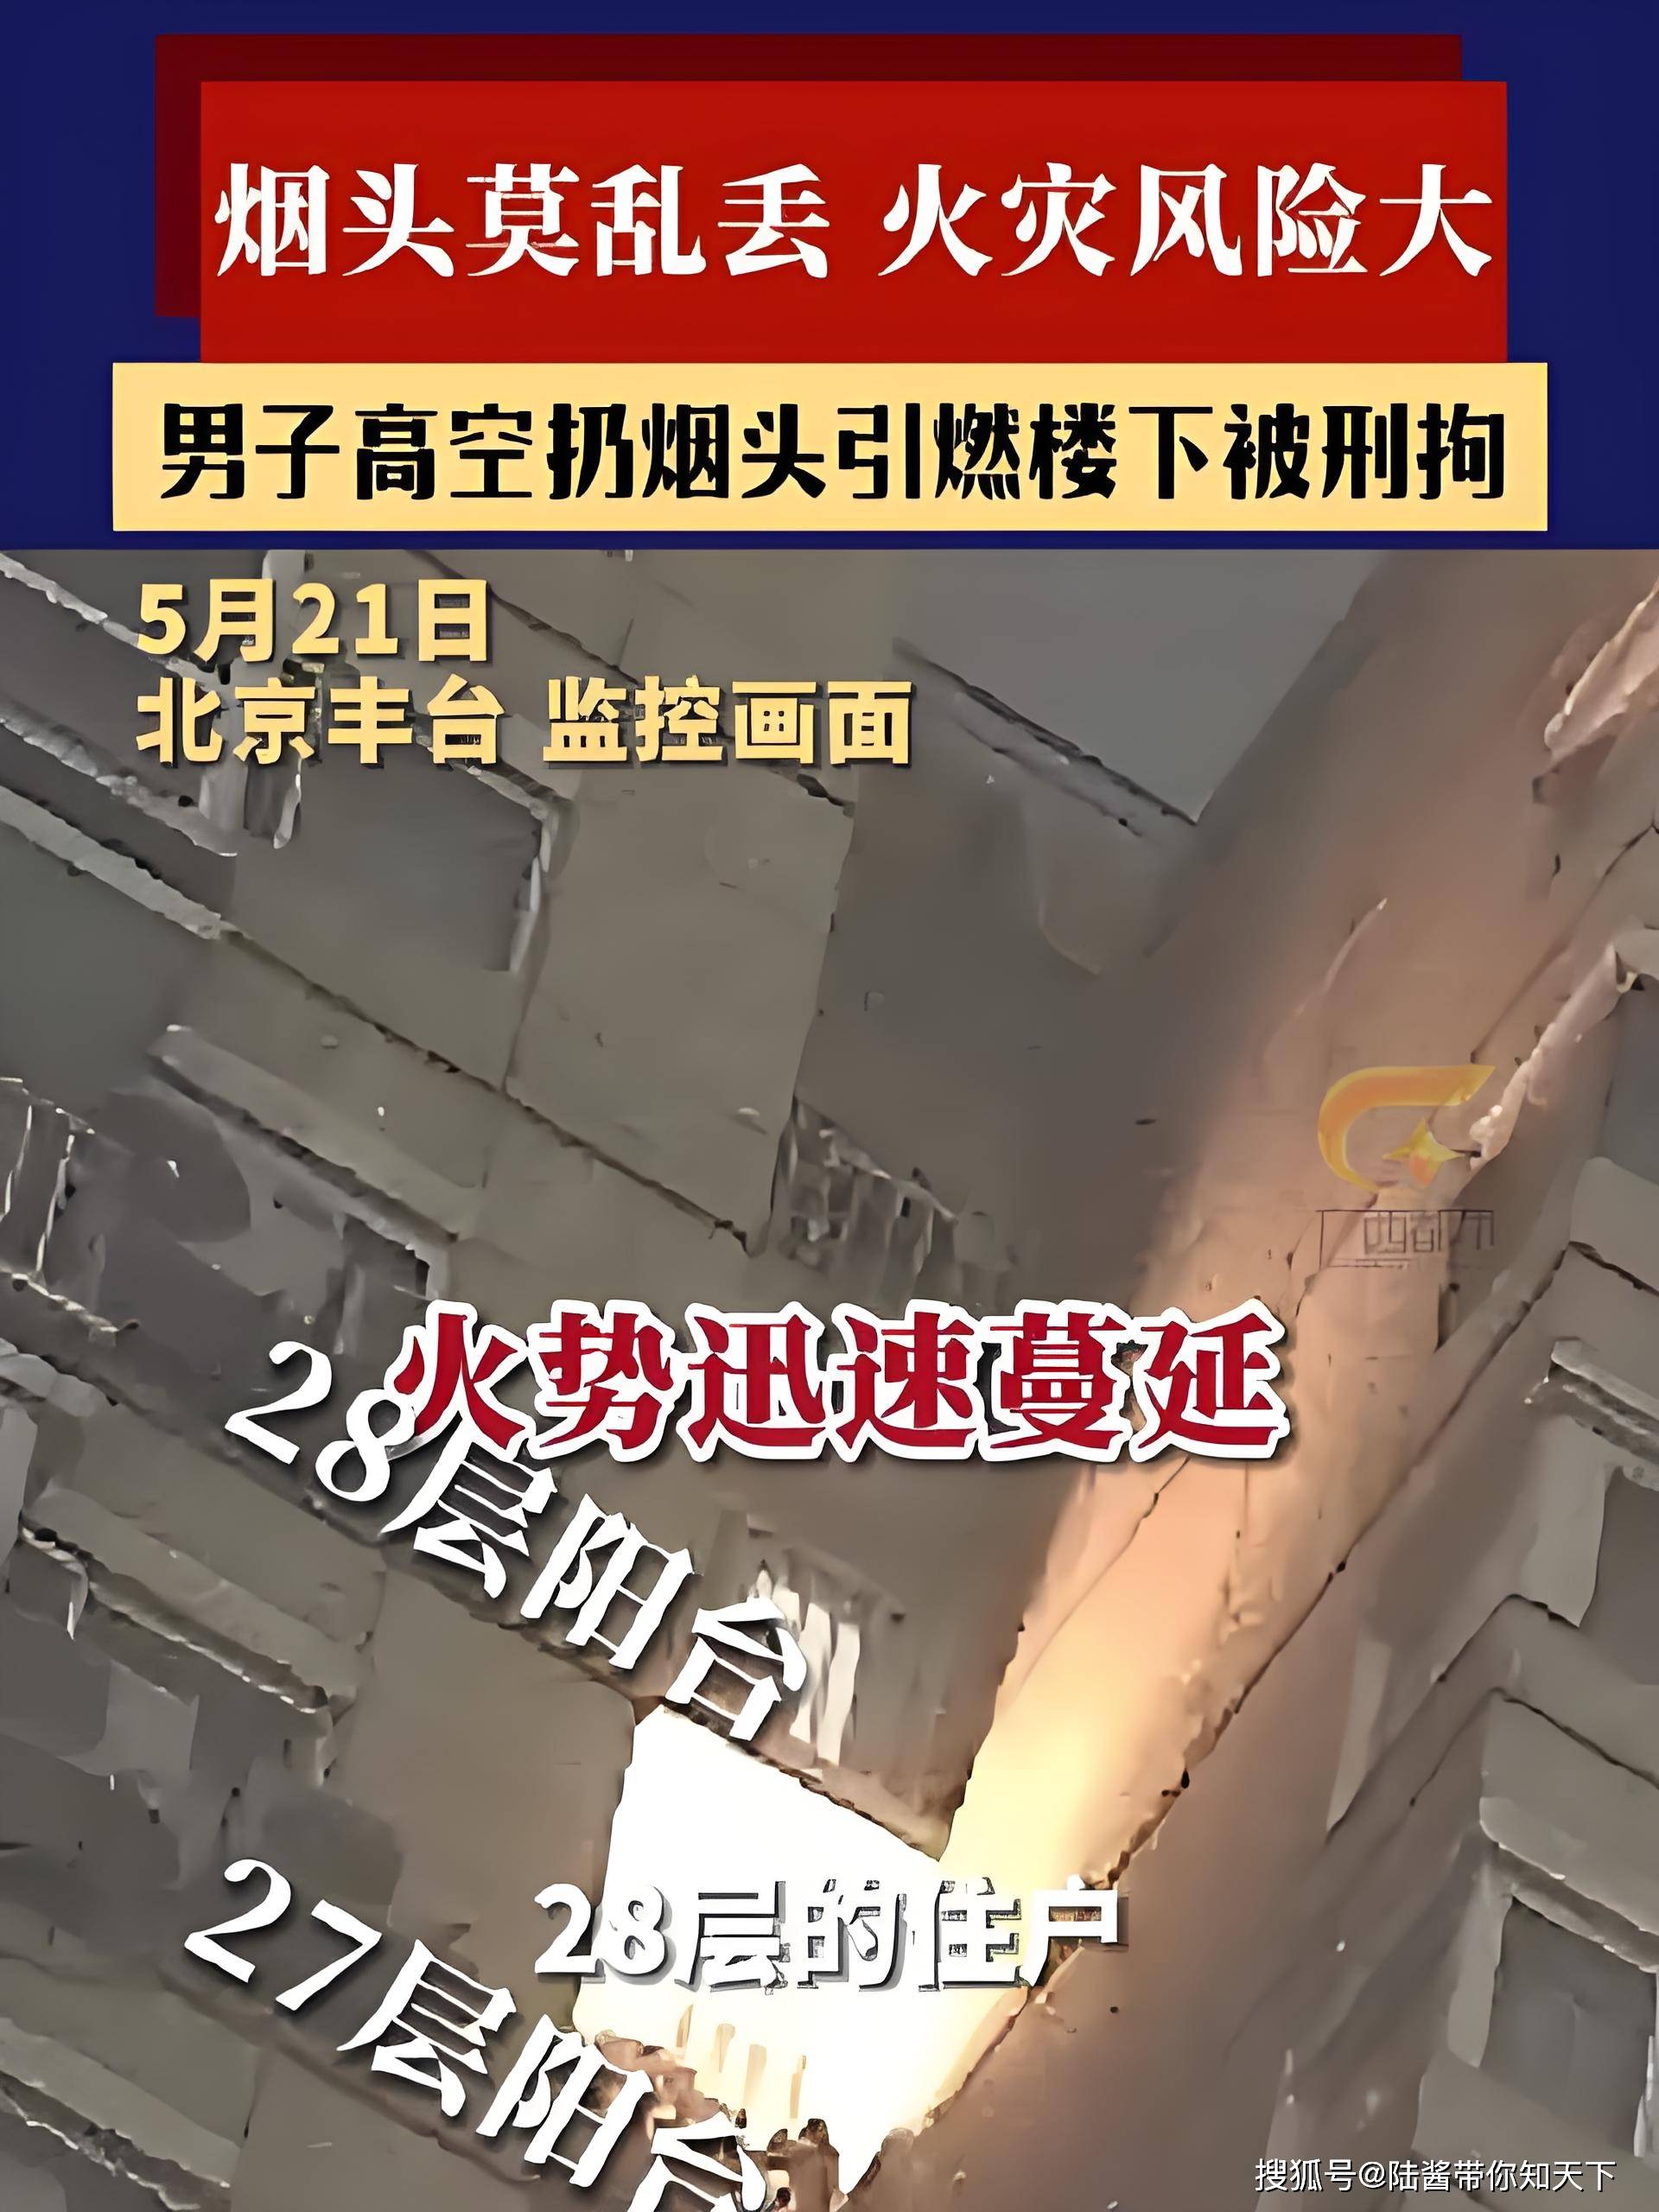 男子在28楼随手扔烟头被拘:高楼抛物之害与法律责任